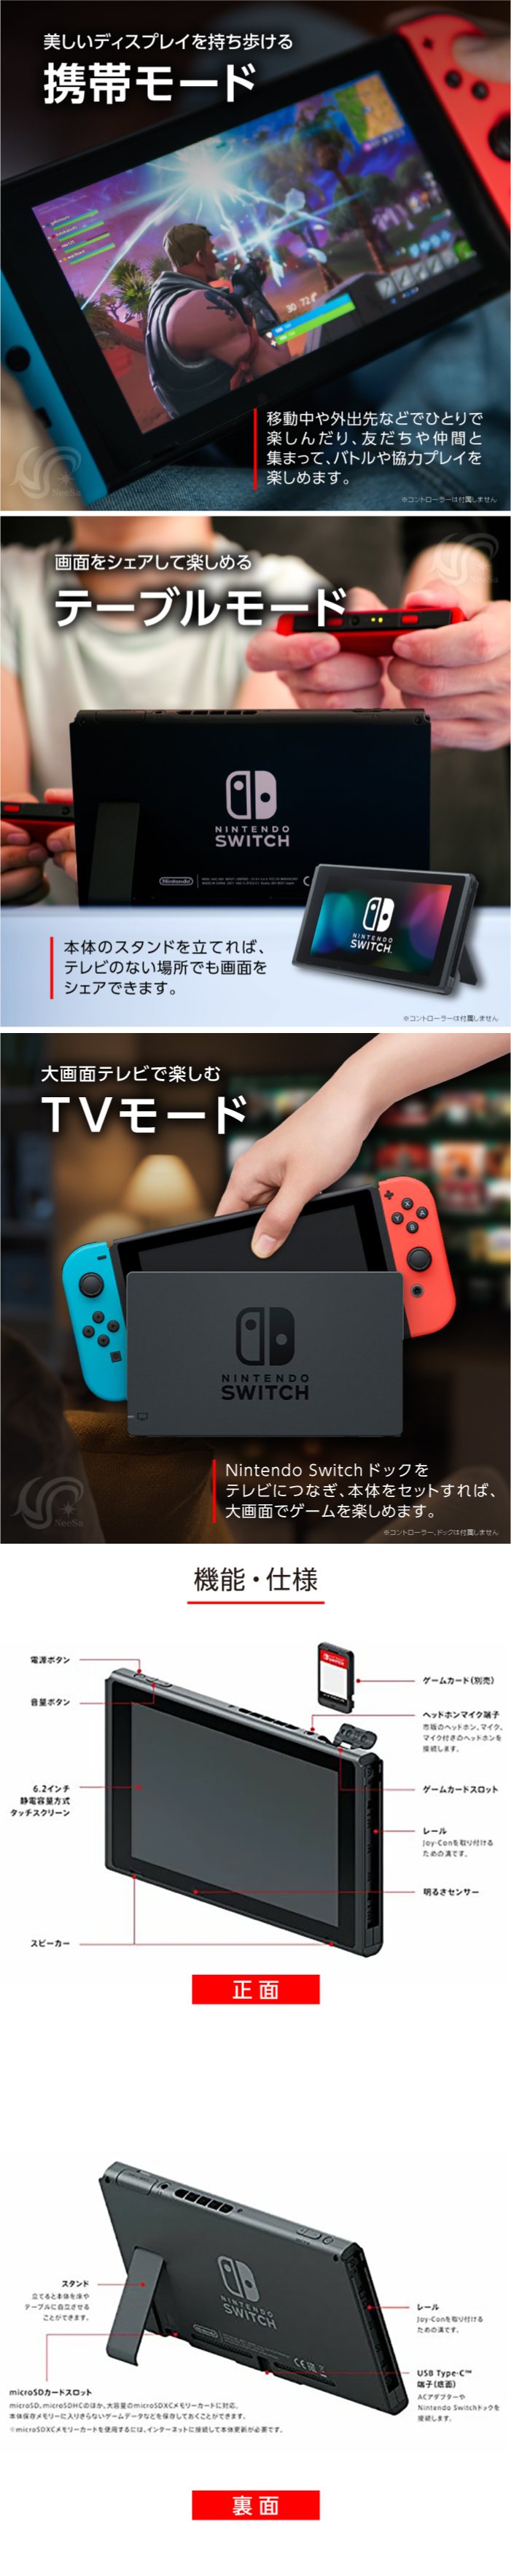 有機ELモデル Nintendo Switch 本体のみ ニンテンドースイッチ 